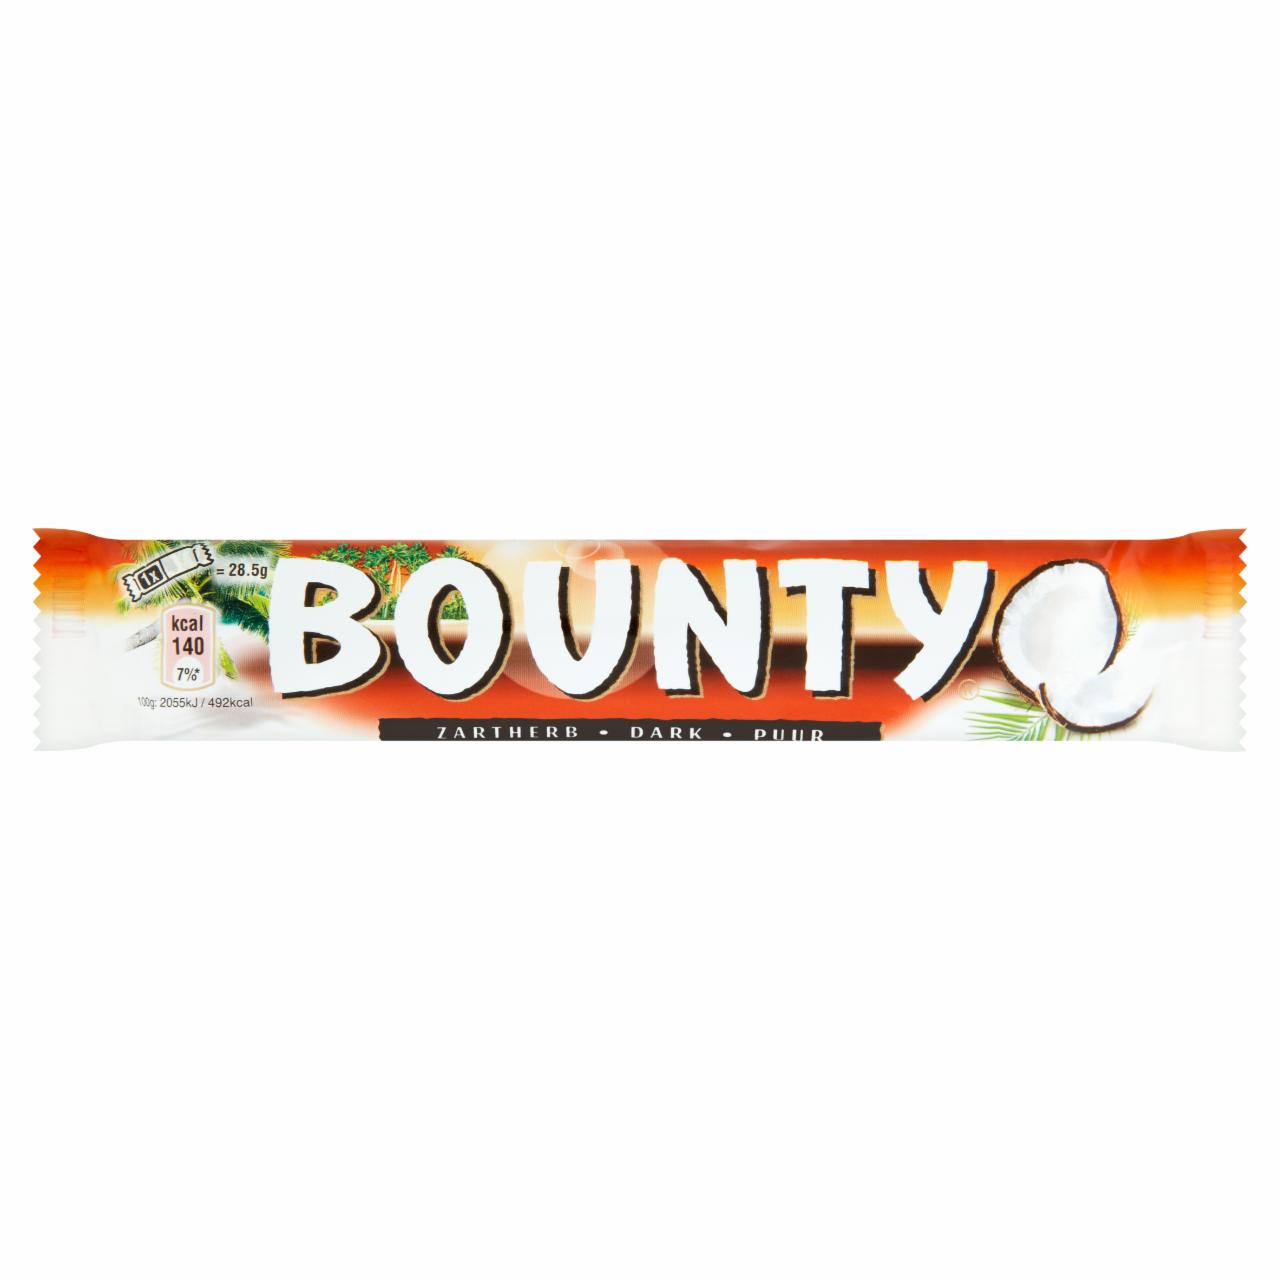 Képek - Bounty kókuszos szeletek étcsokoládéba mártva 2 x 28,5 g (57 g)